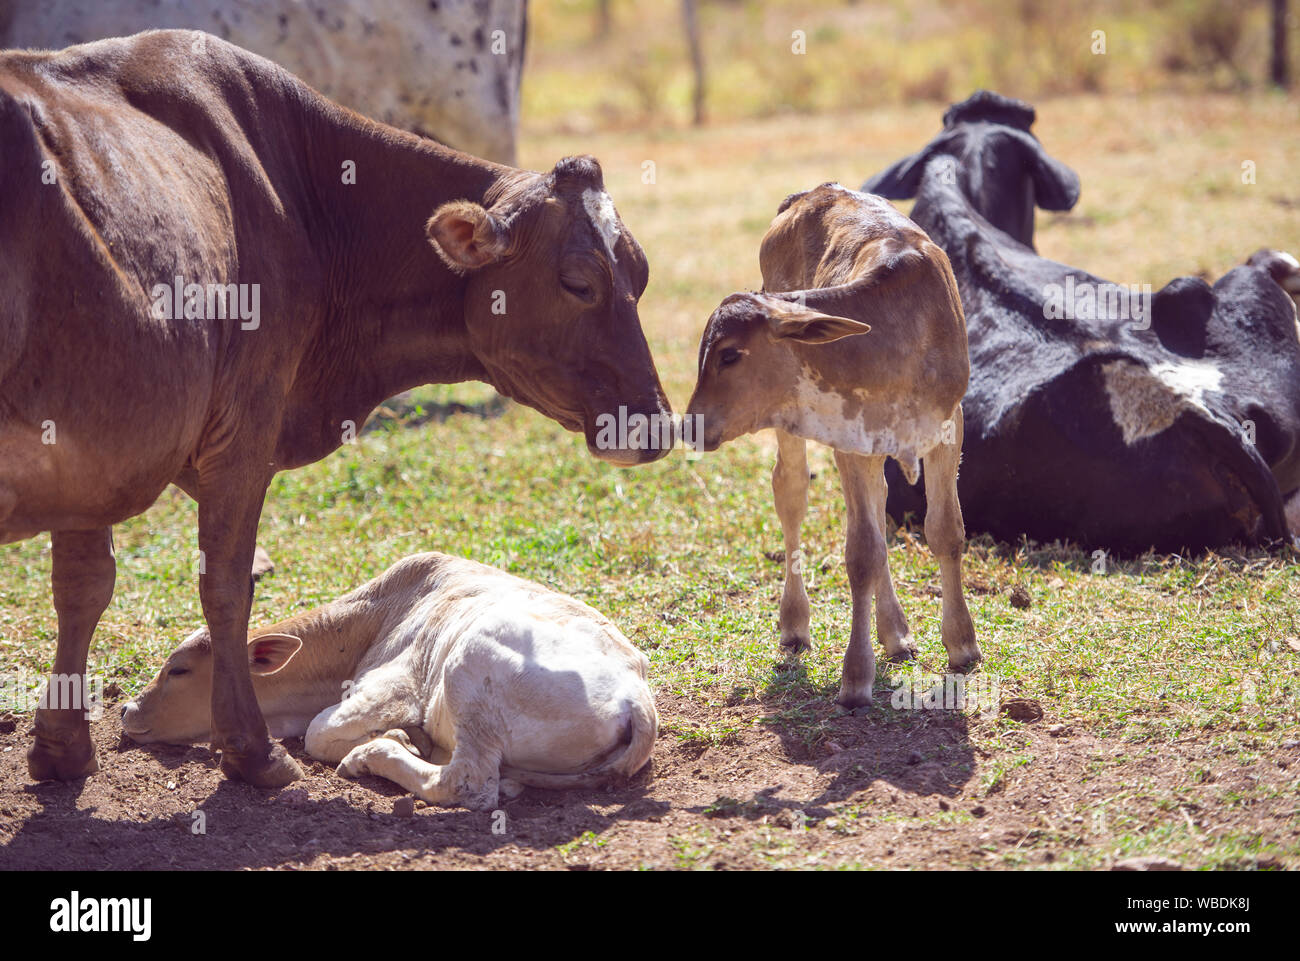 Ländliche Bild. Mutter Kuh die Pflege von Neugeborenen Kalb. Konzept Bild von Leben auf dem Bauernhof. Stockfoto